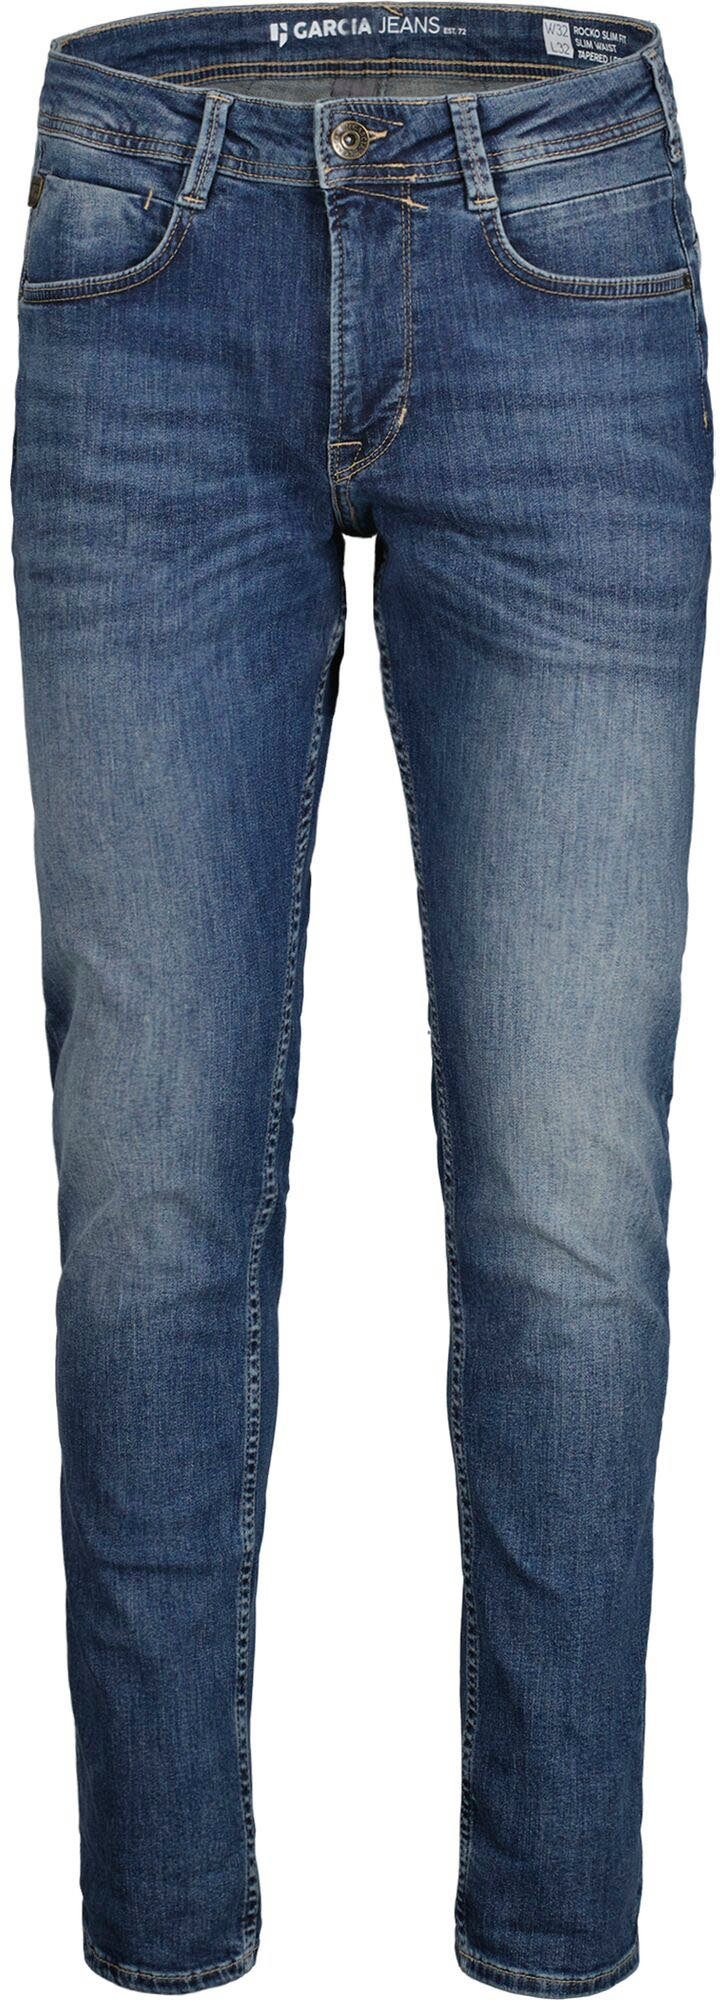 verschiedenen used Garcia 5-Pocket-Jeans in Rocko Waschungen medium